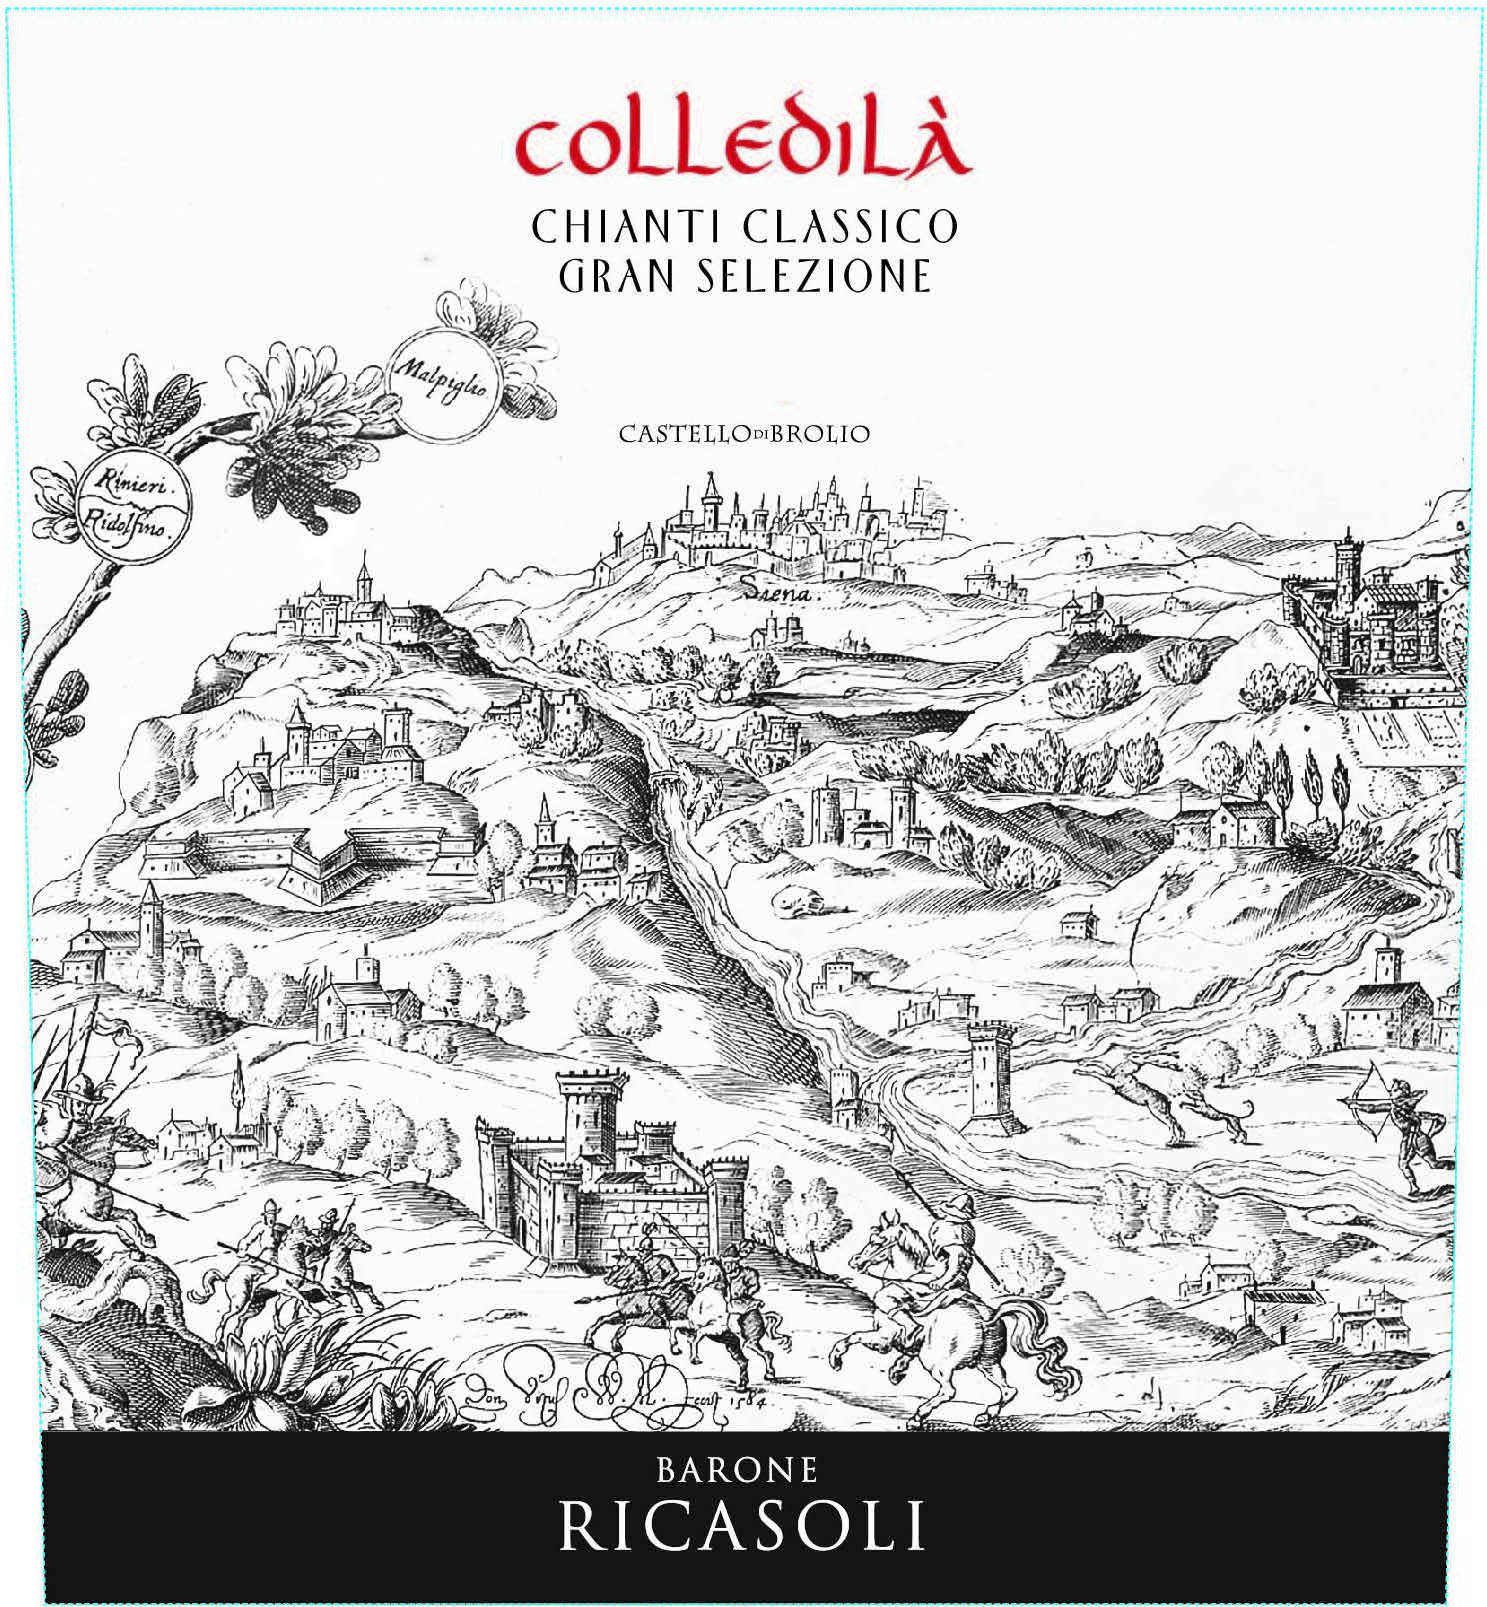 Barone Ricasoli - Colledila Chianti Classico Gran Selezione label